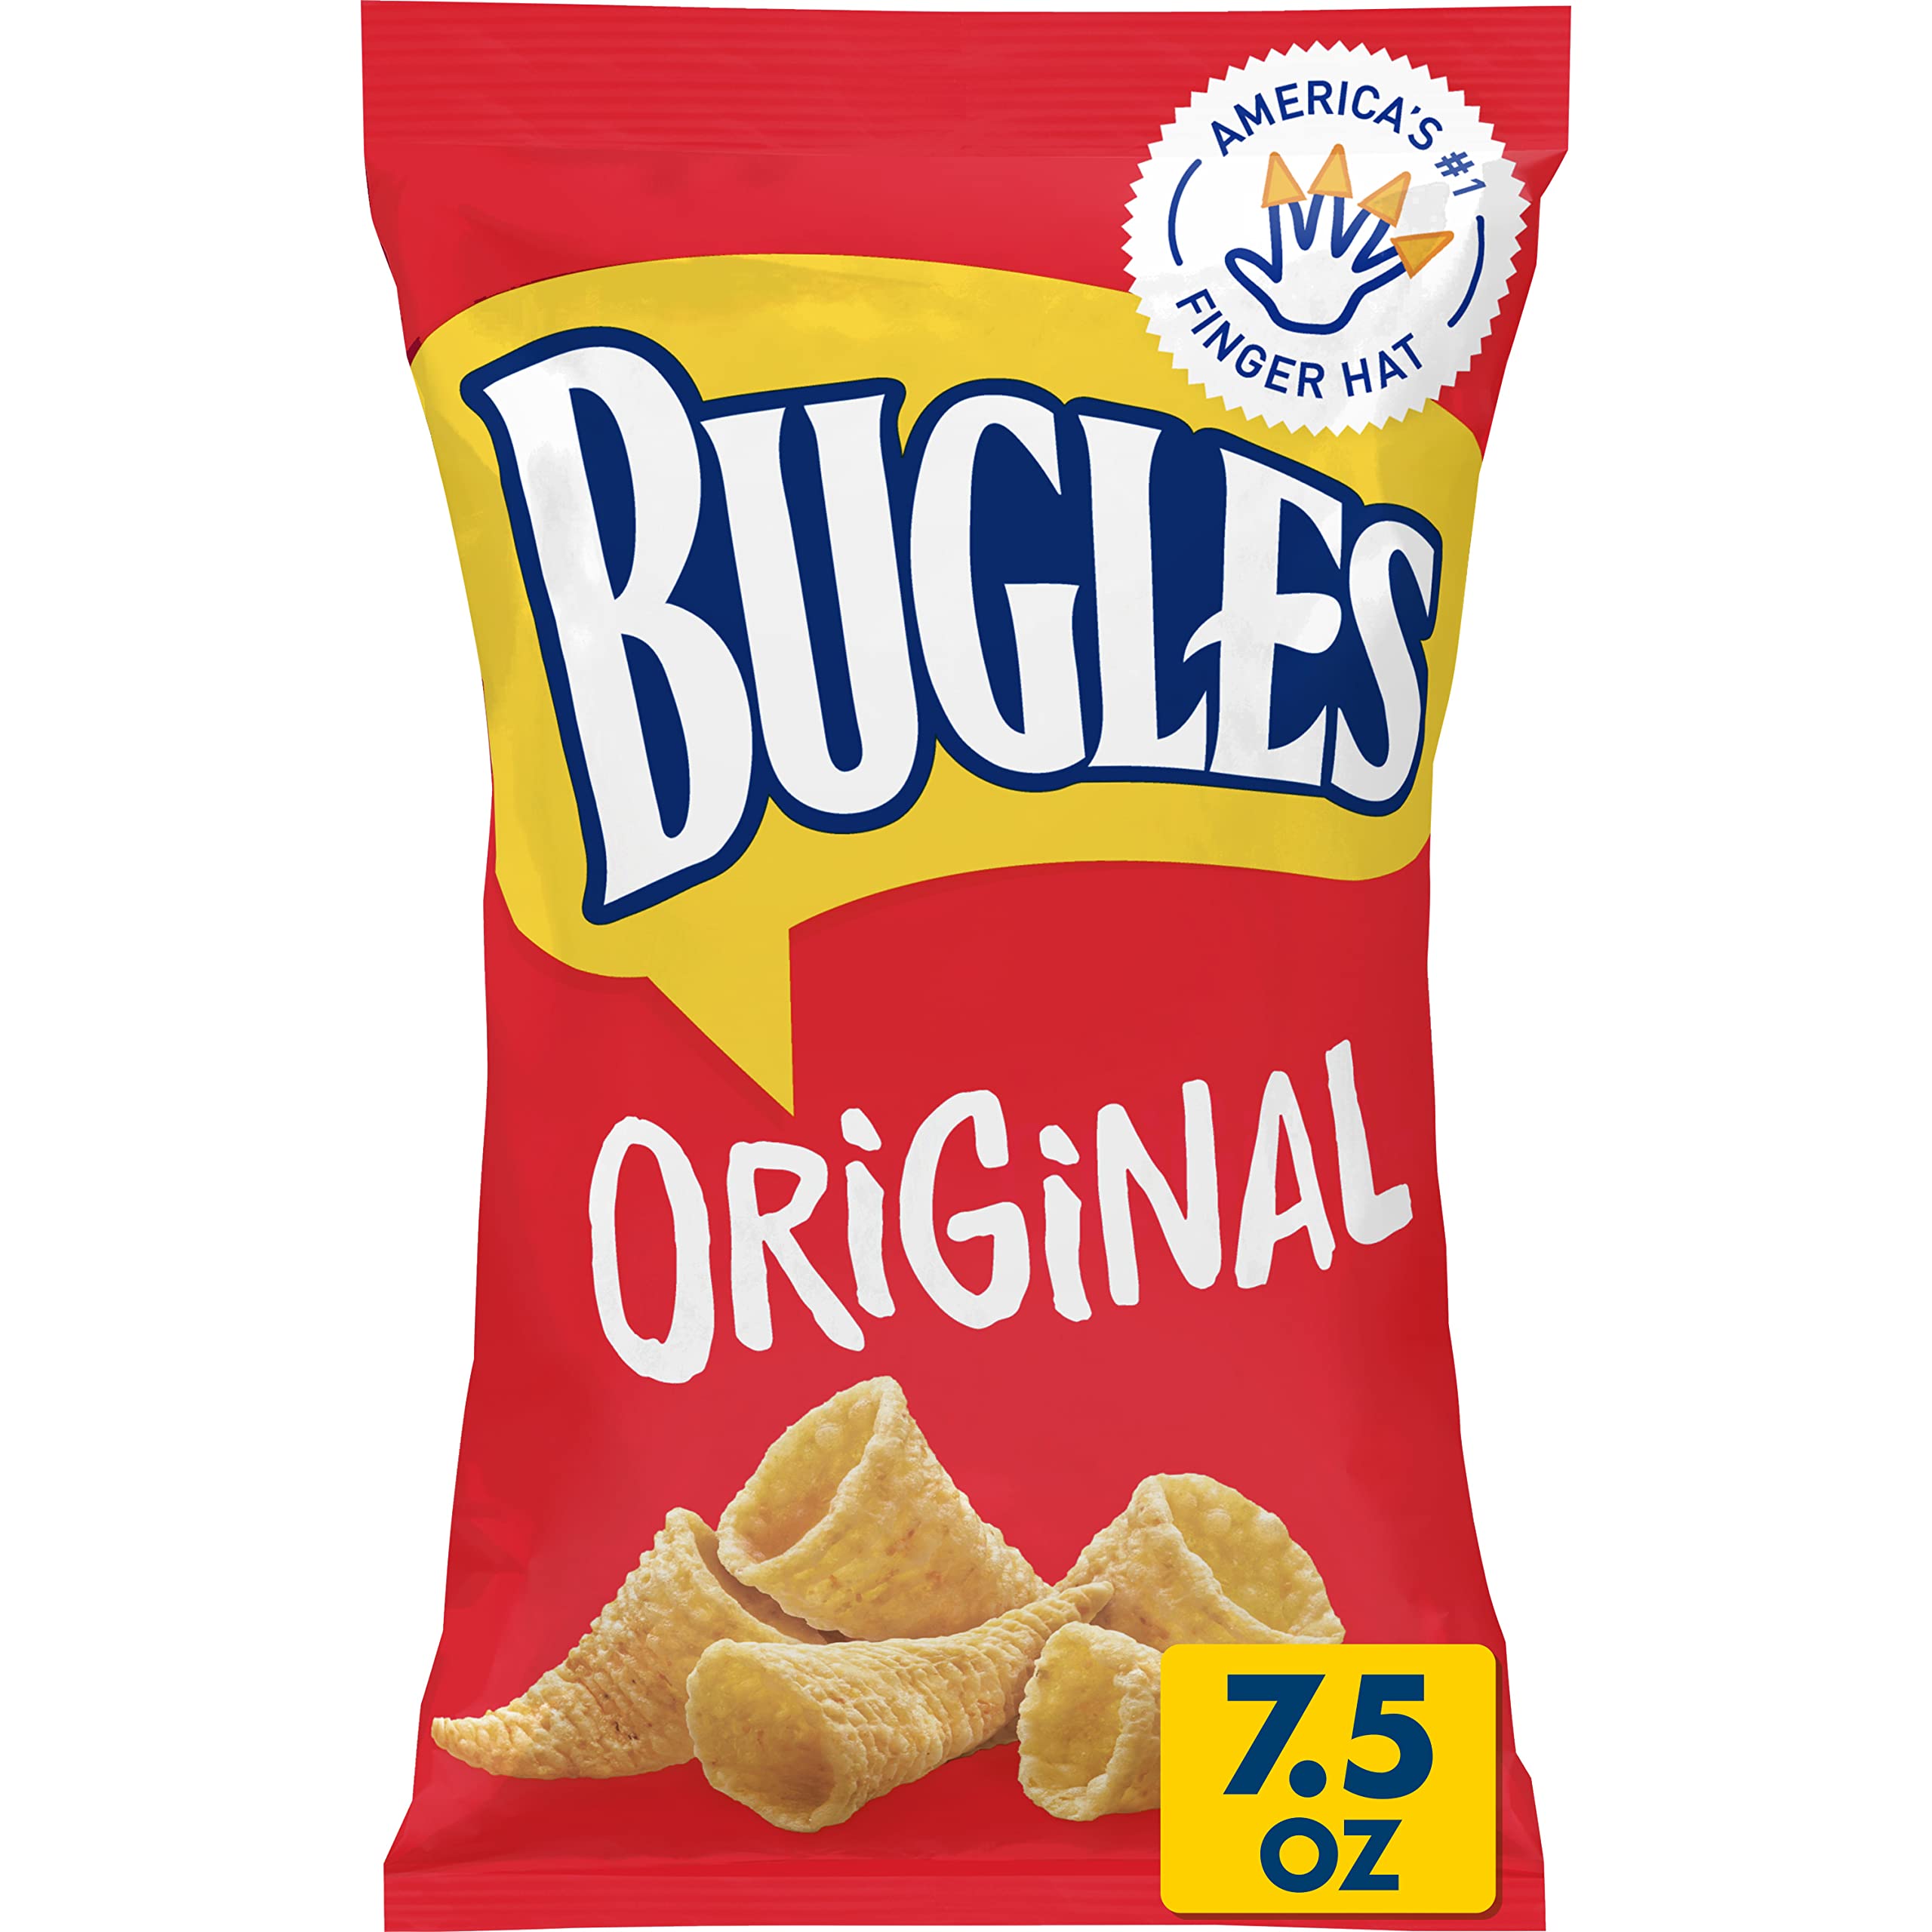 General Mills - Bugles Original - 85g